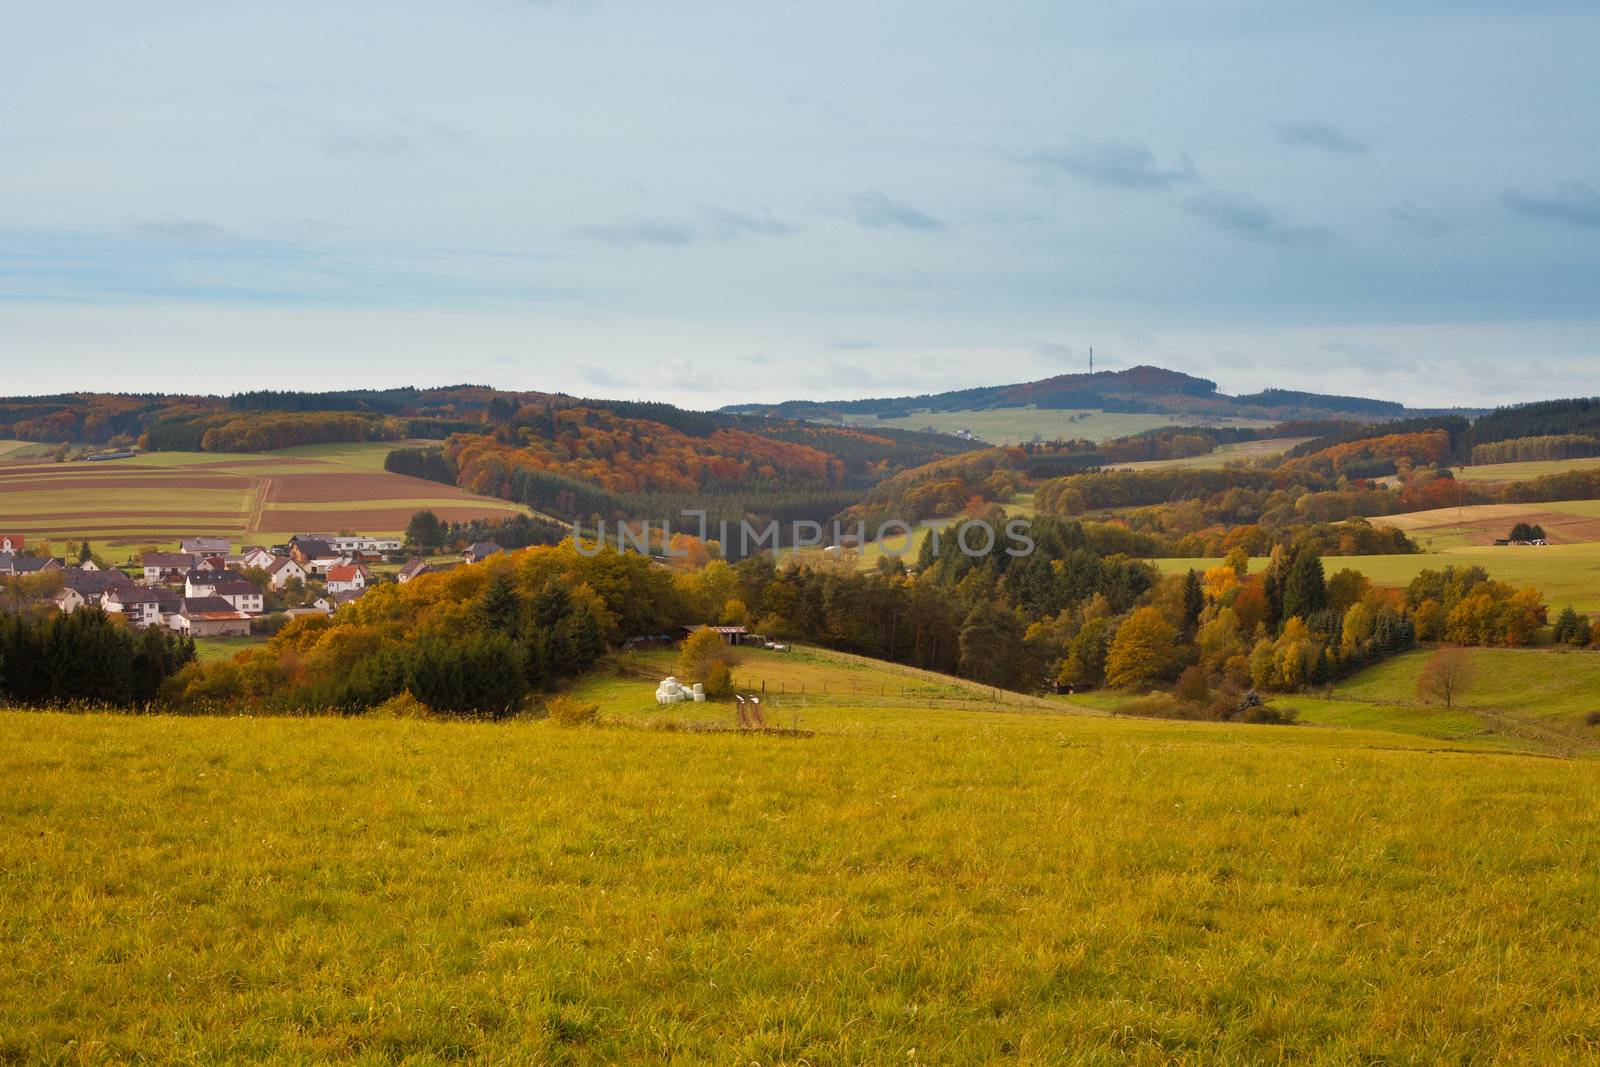 Eifel Landscape, Germany by PiLens